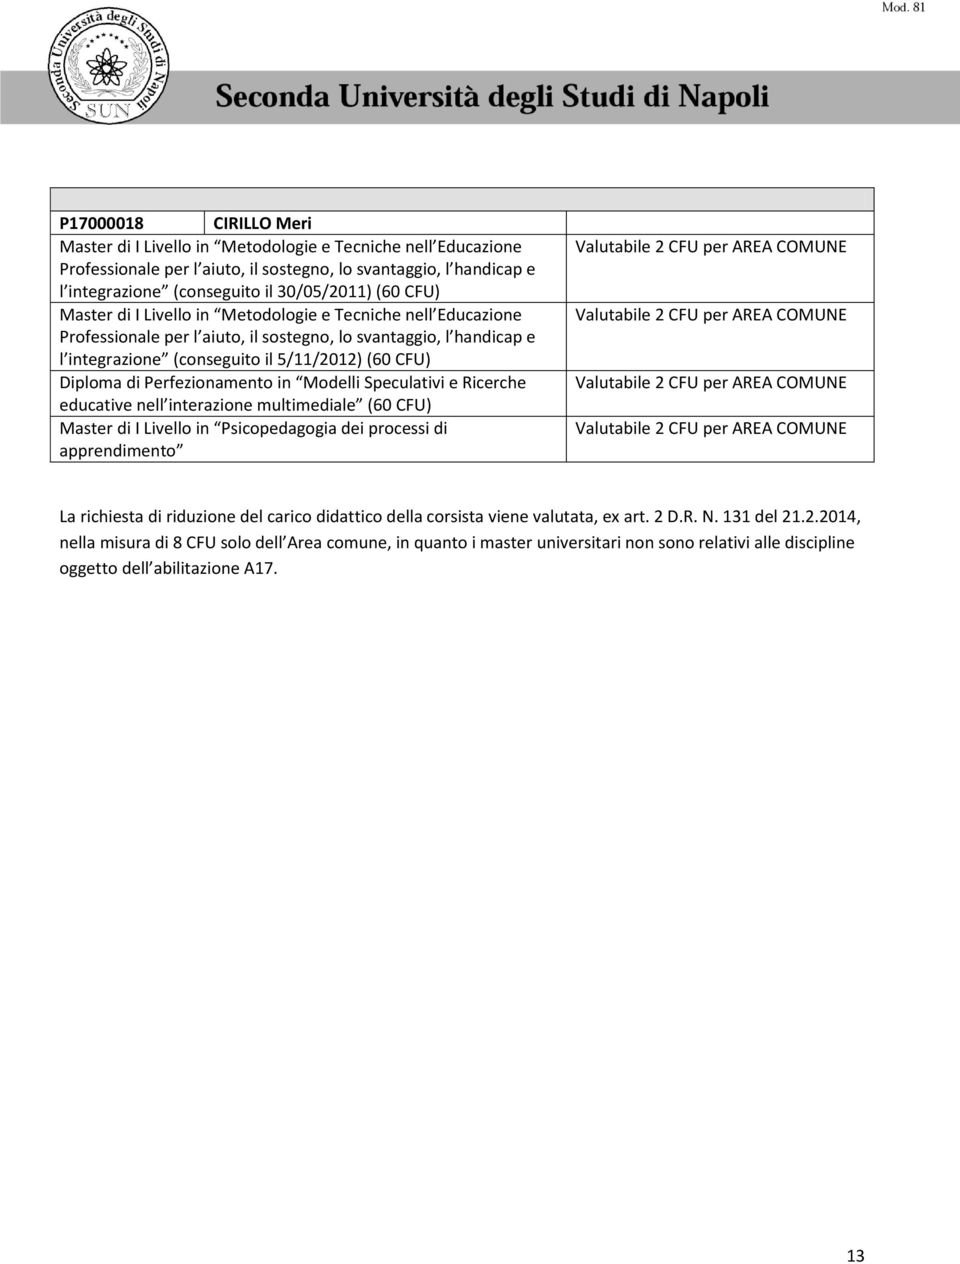 integrazione (conseguito il 5/11/2012) (60 CFU) Diploma di Perfezionamento in Modelli Speculativi e Ricerche educative nell interazione multimediale (60 CFU) Master di